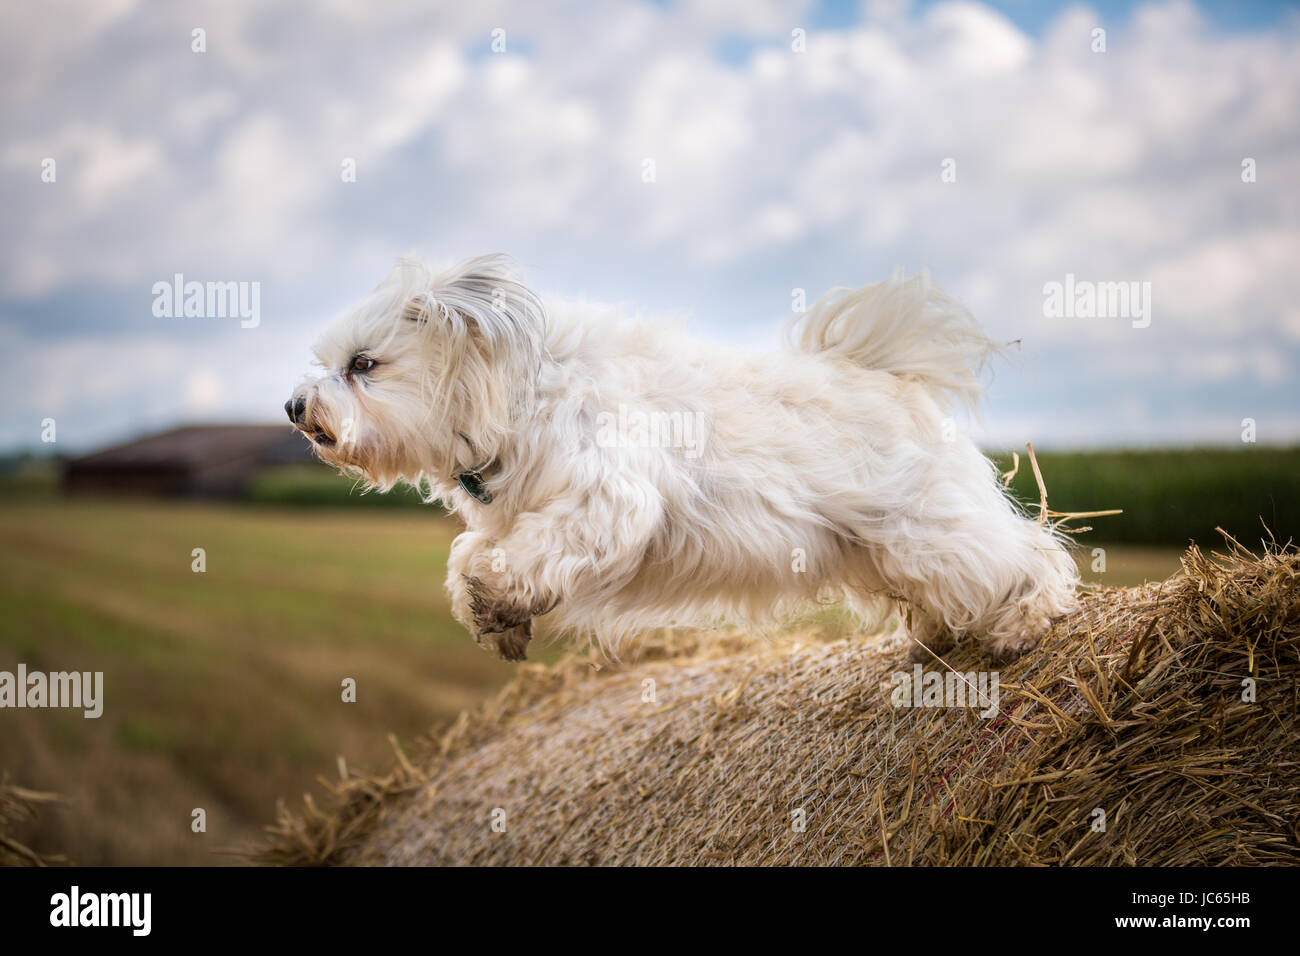 Ein kleiner weißer Hund springt von einem Strohballen ab. Stock Photo